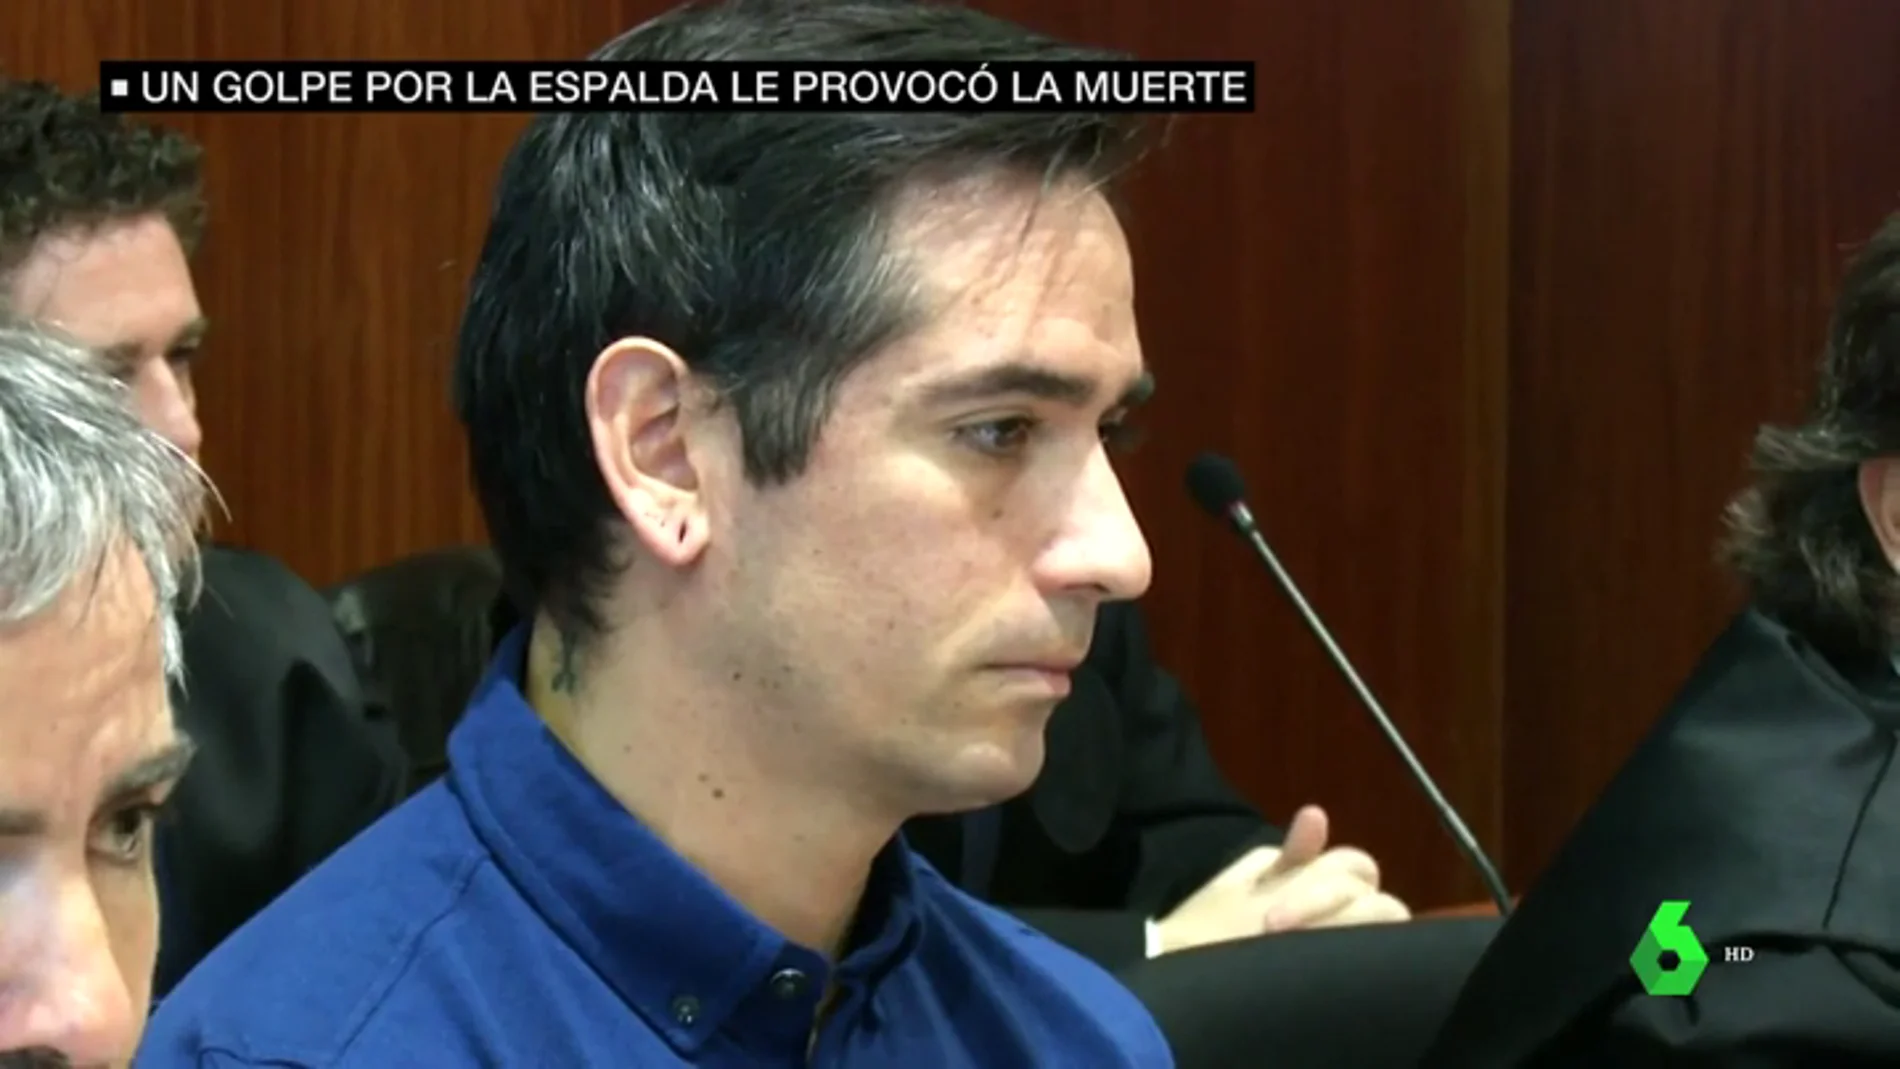 "Tenía la nariz hundida y le sangraba el oído": los forenses declaran en el juicio contra Rodrigo Lanza